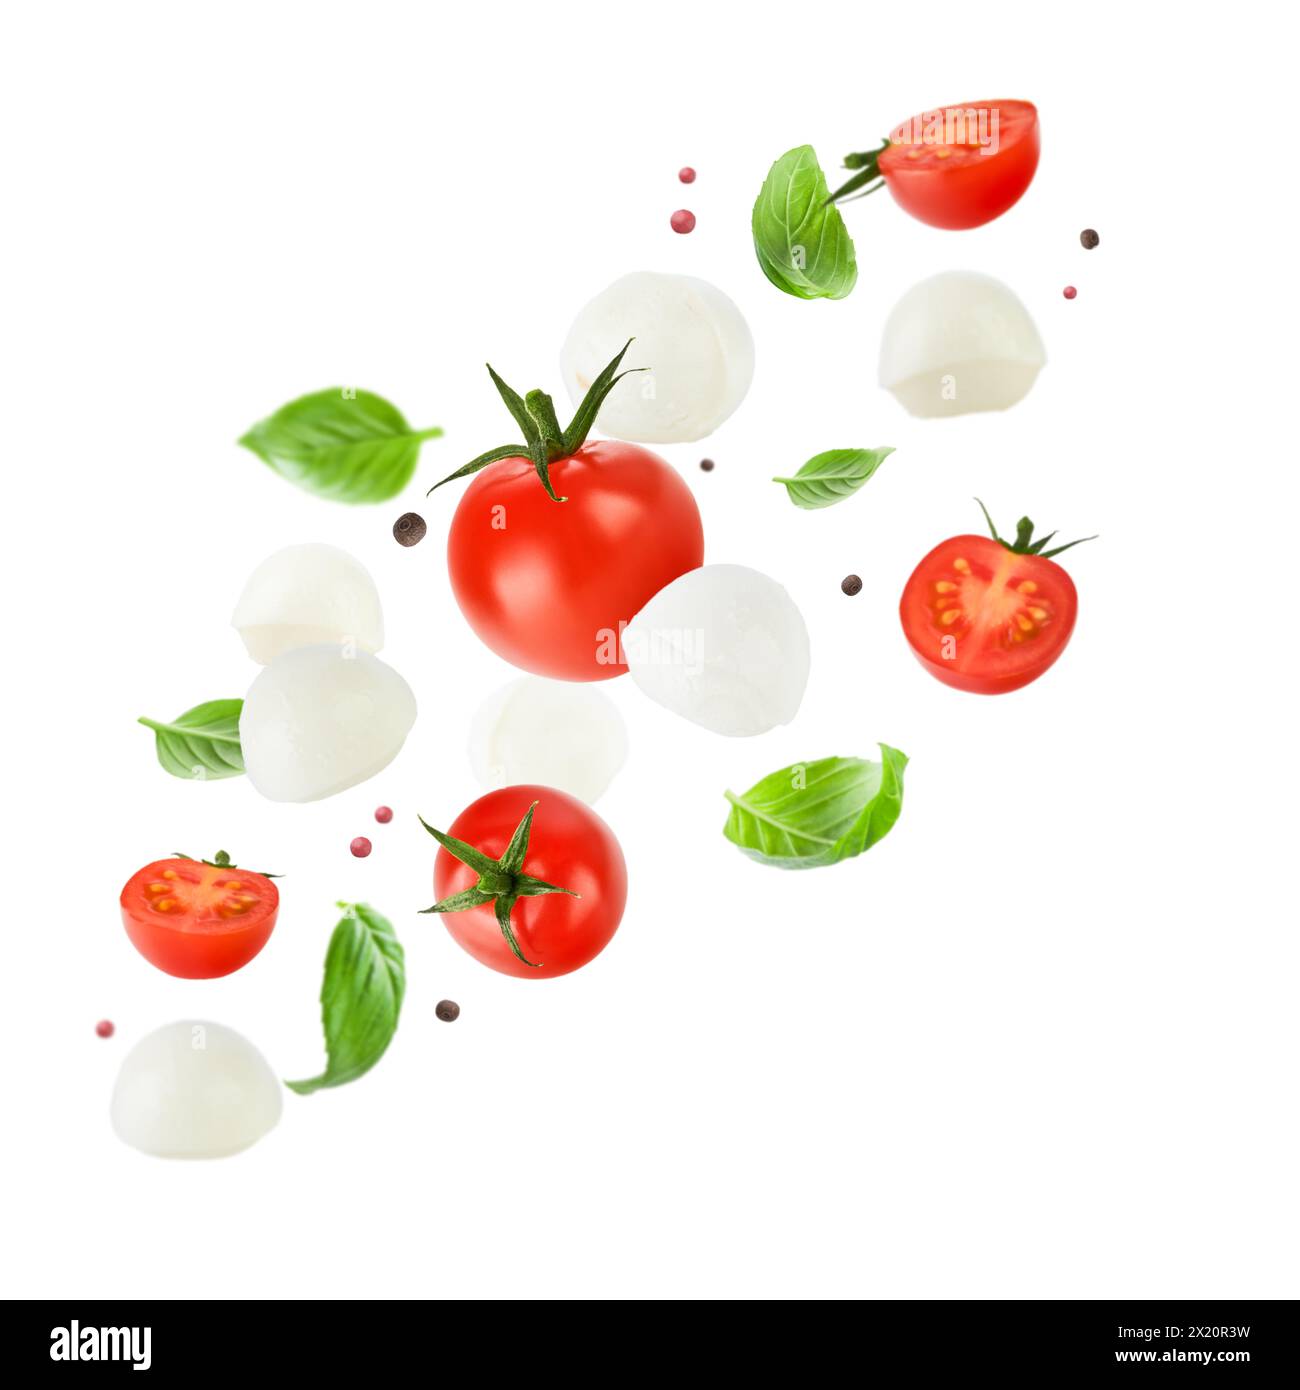 Fliegende Mozzarella-Käsebällchen, Tomaten, Basilikumblätter und Pfeffer für Caprese-Salat isoliert auf weißem Hintergrund. Mockup für Werbung oder Produ Stockfoto